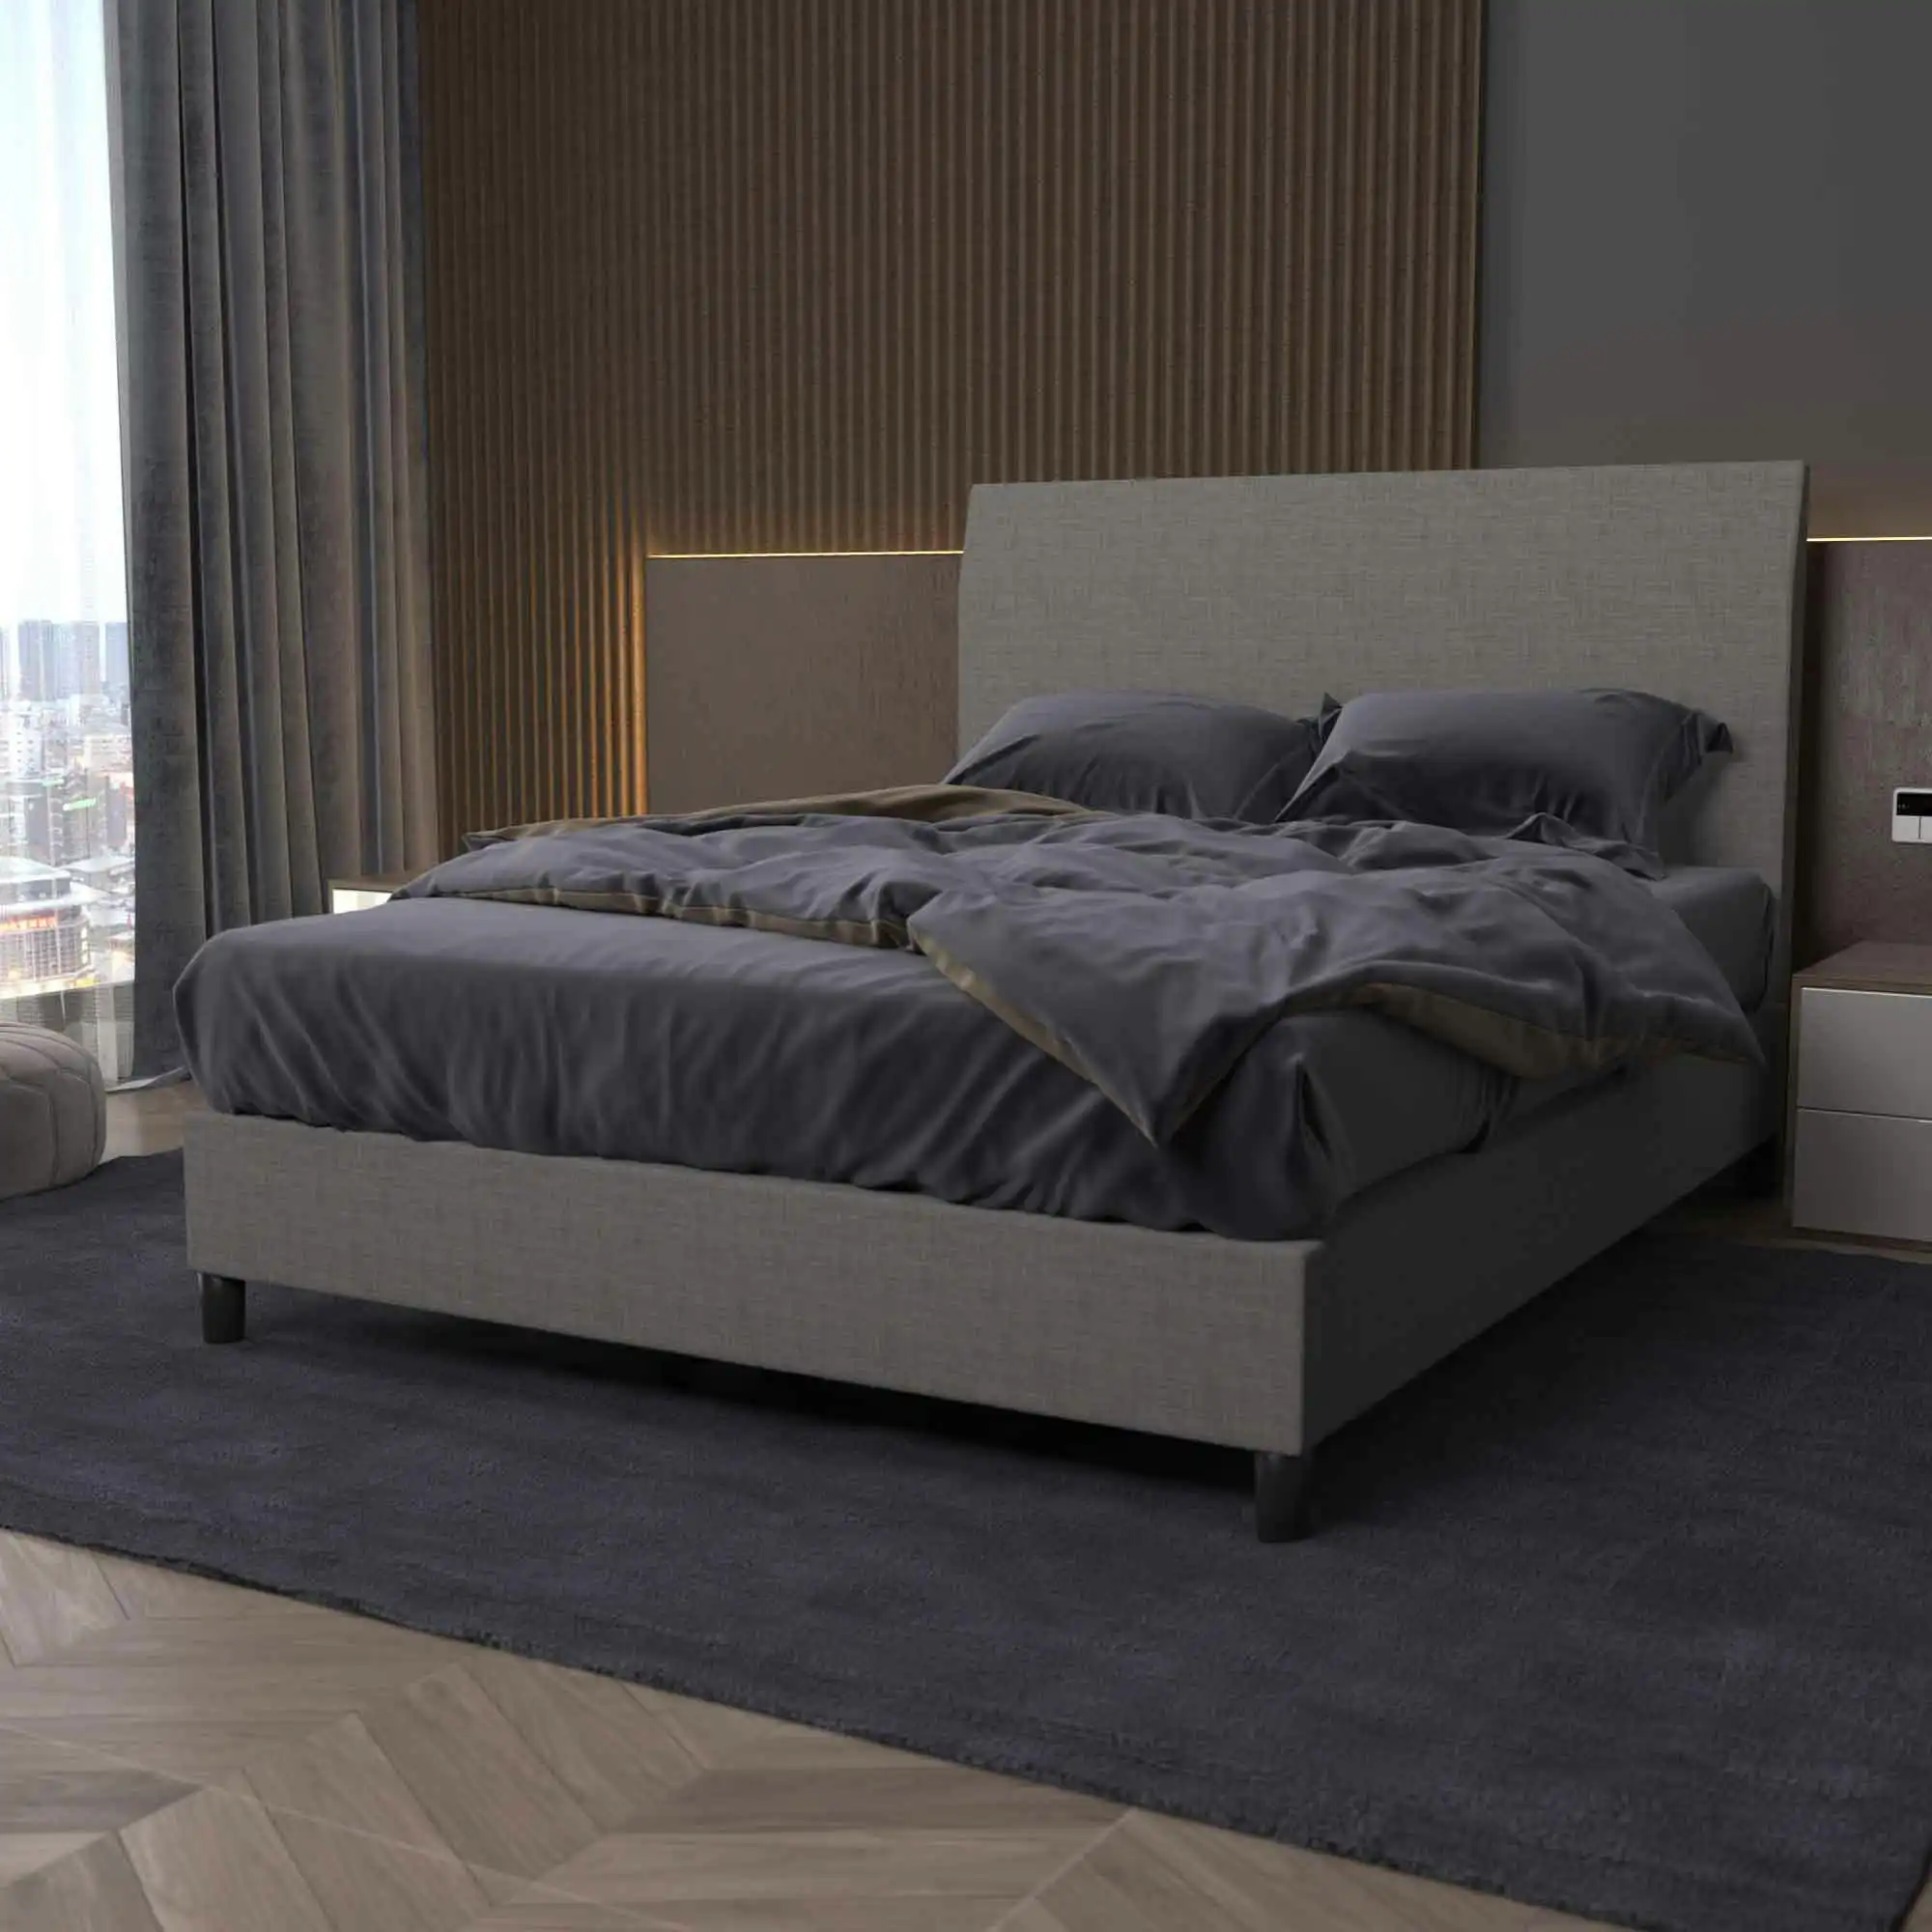 Bedhead & Bed Base Bundle (Upholstered Portabase - Light Grey)